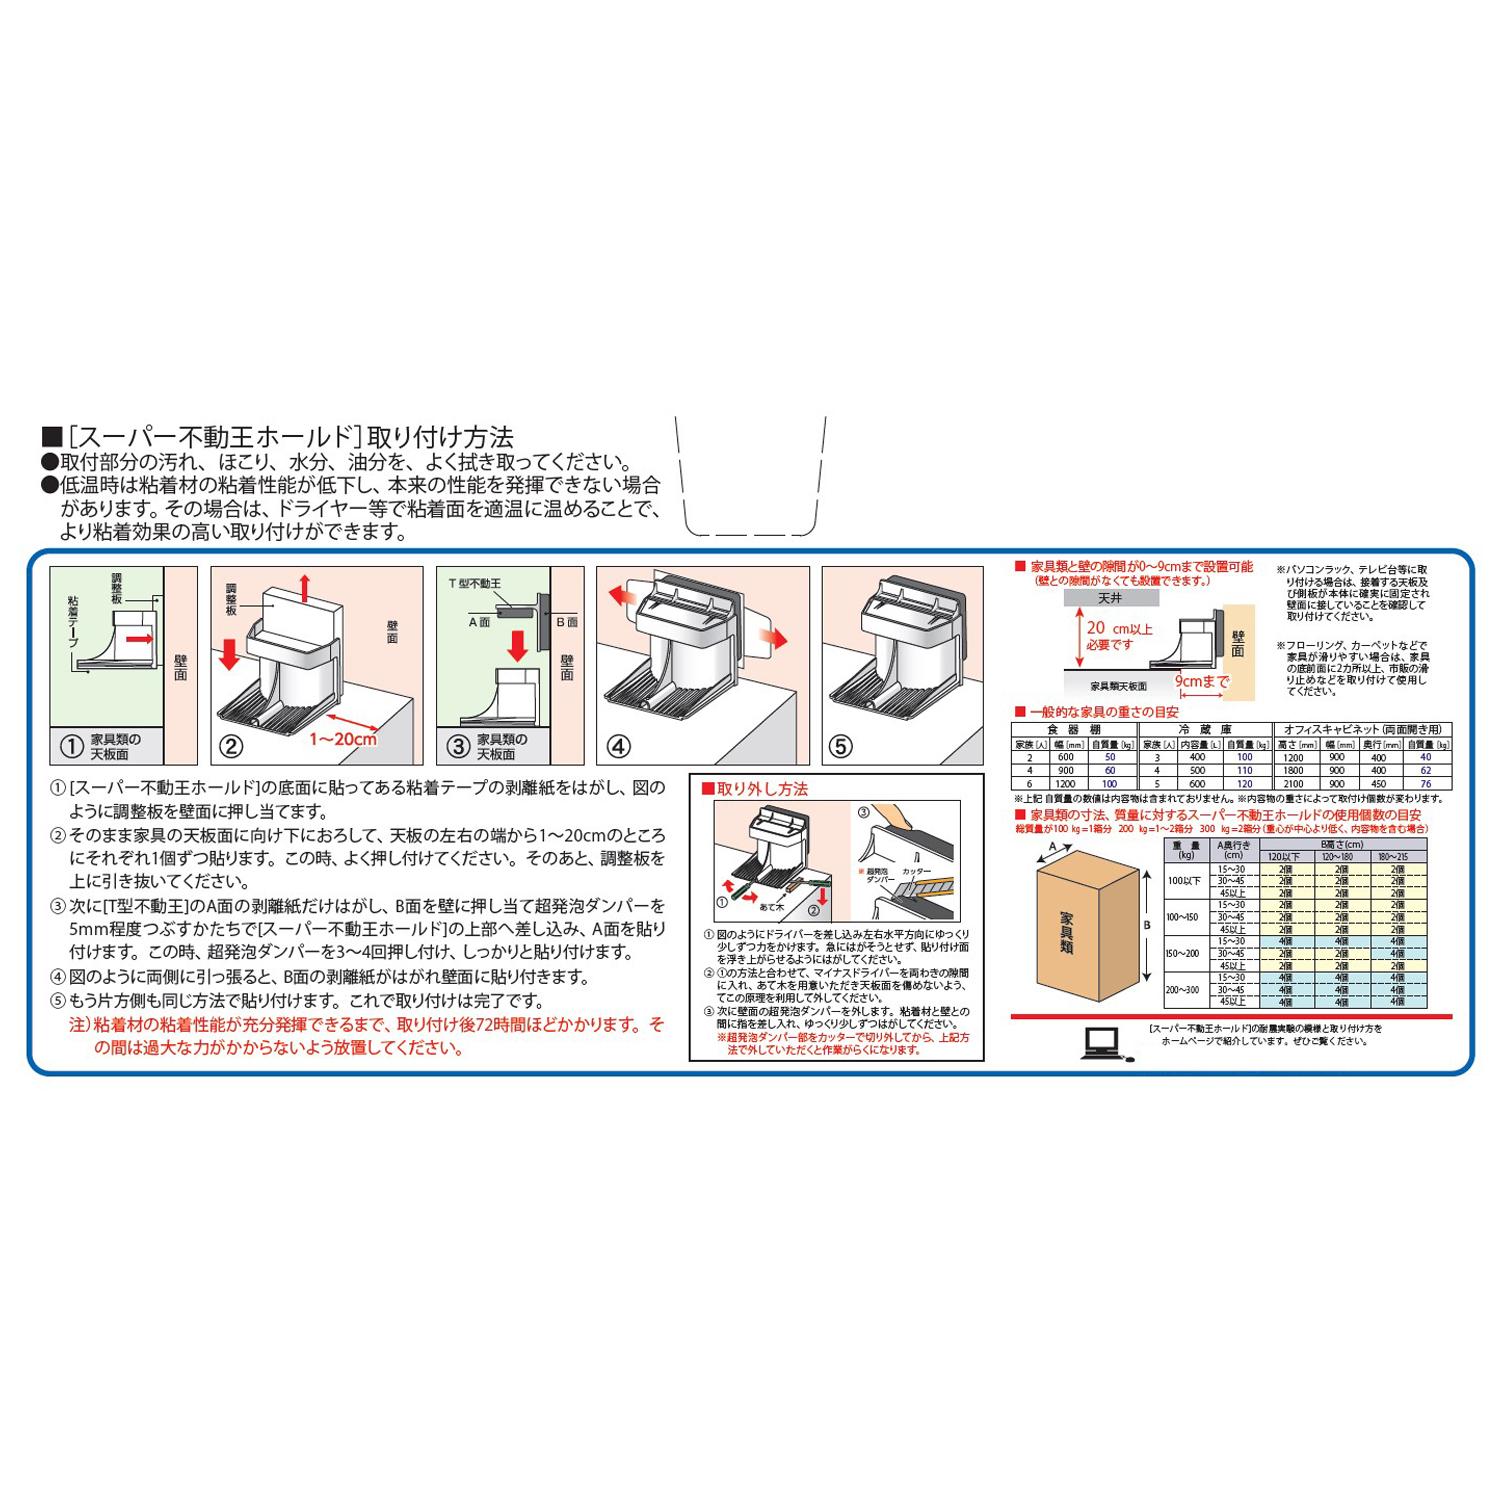 地震対策におすすめ 家具転倒防止器具 FFT-011 スーパー不動王ホールド 再入荷/予約販売!